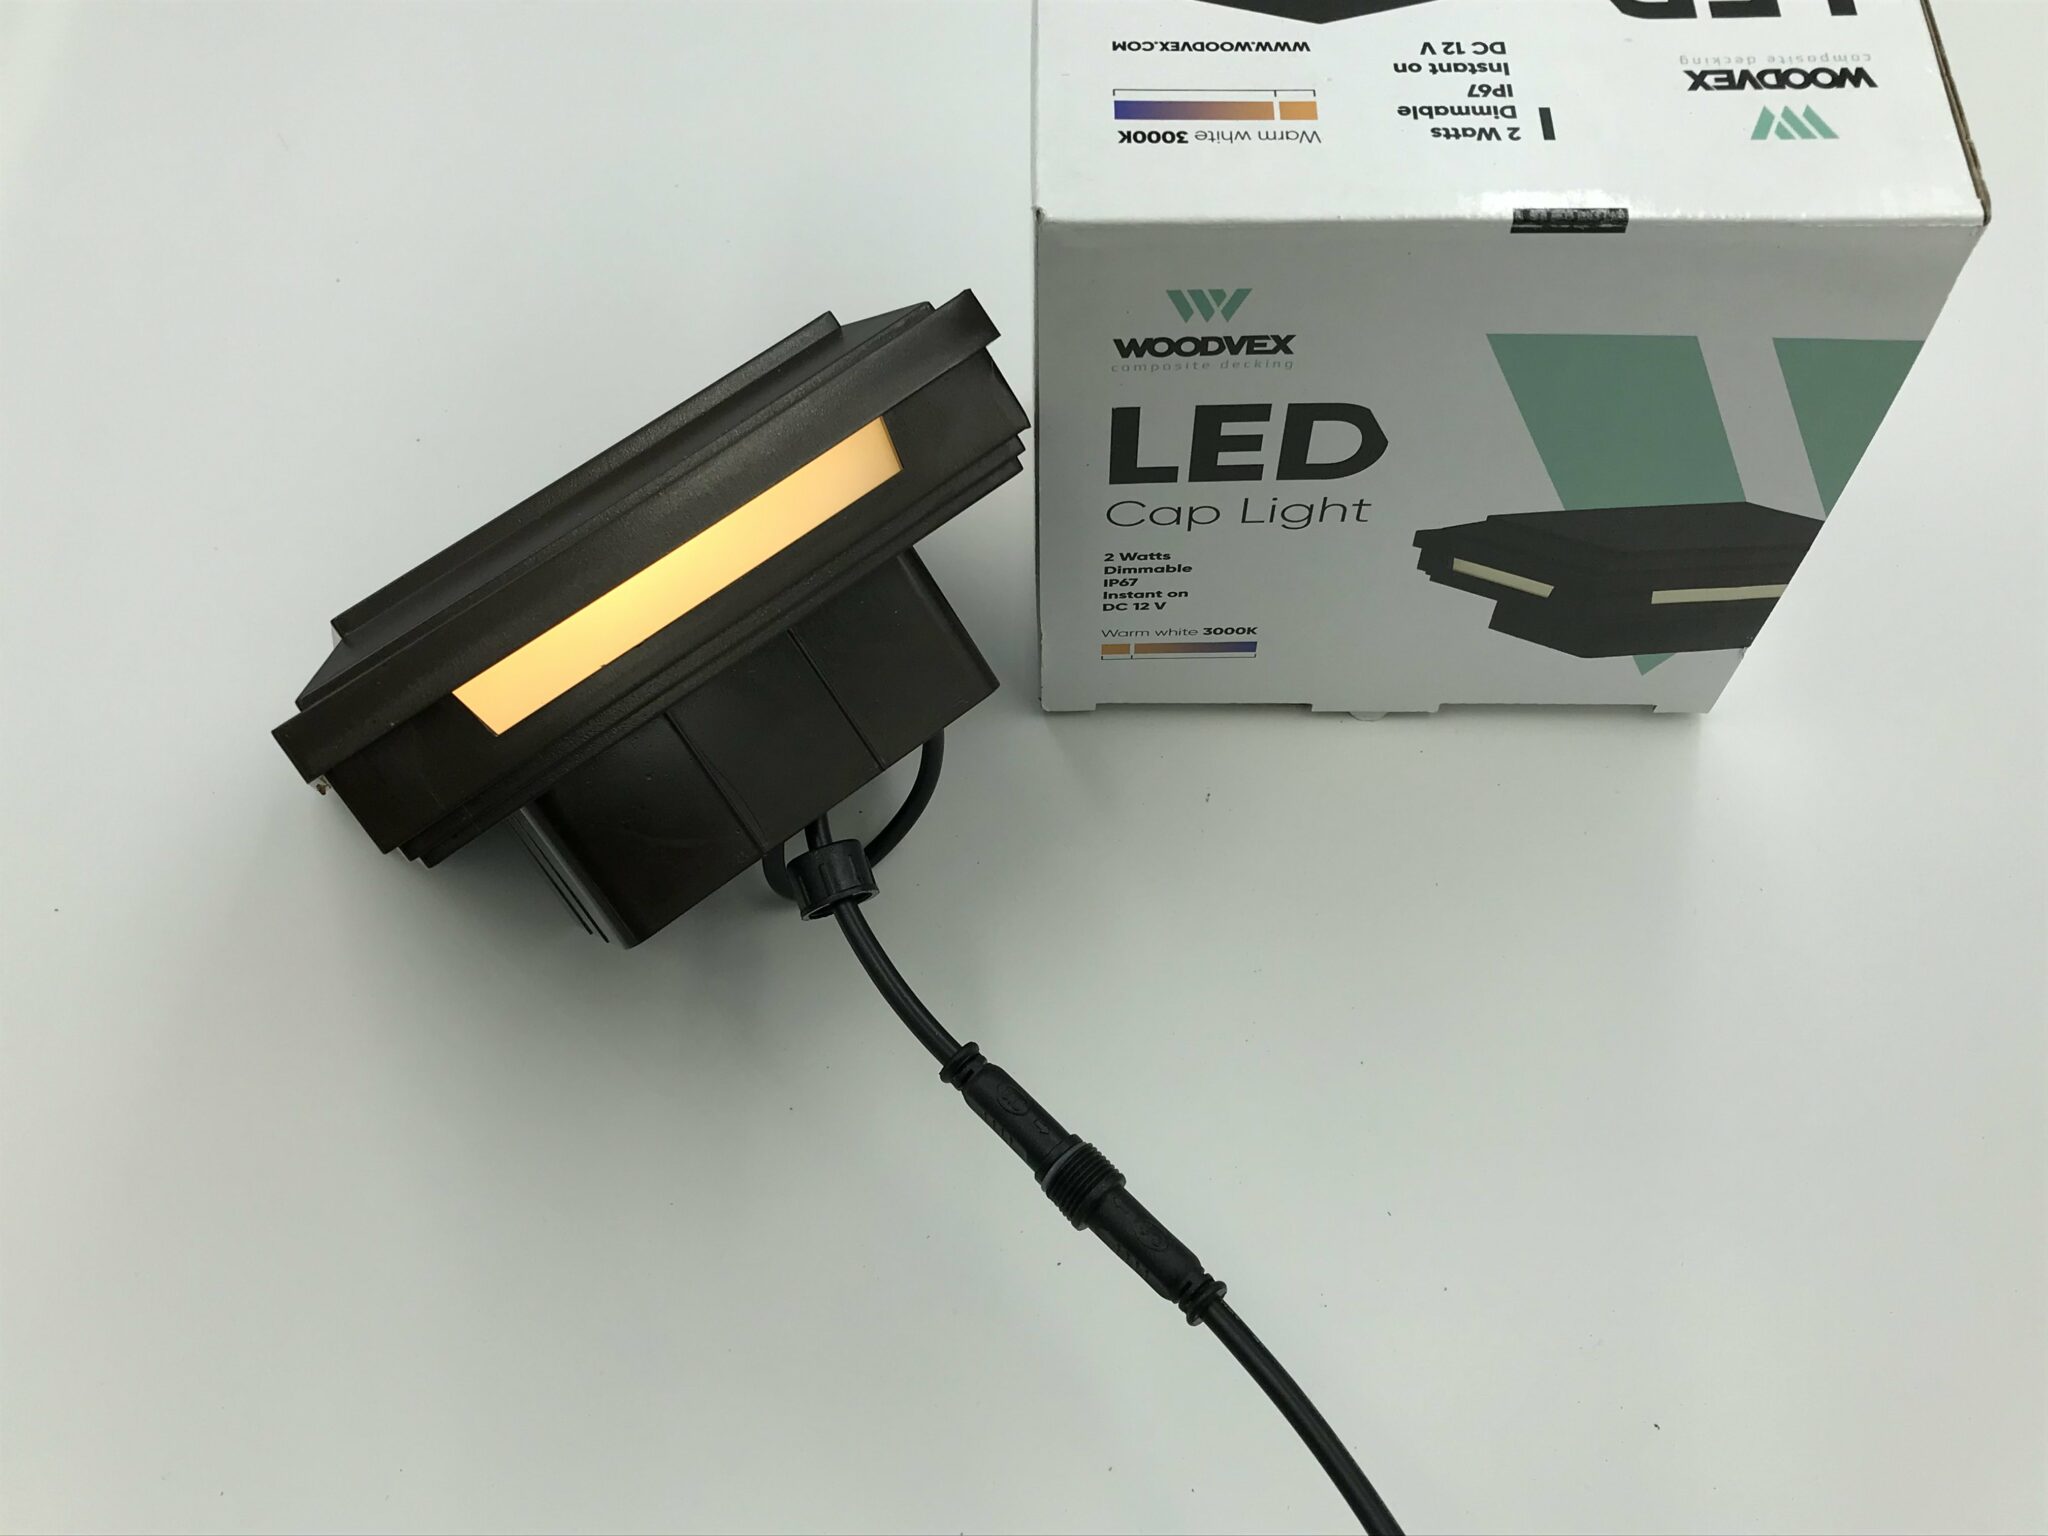 Крышка верхняя WoodVex /LED Светильник  WLCL-122 (коричневый)